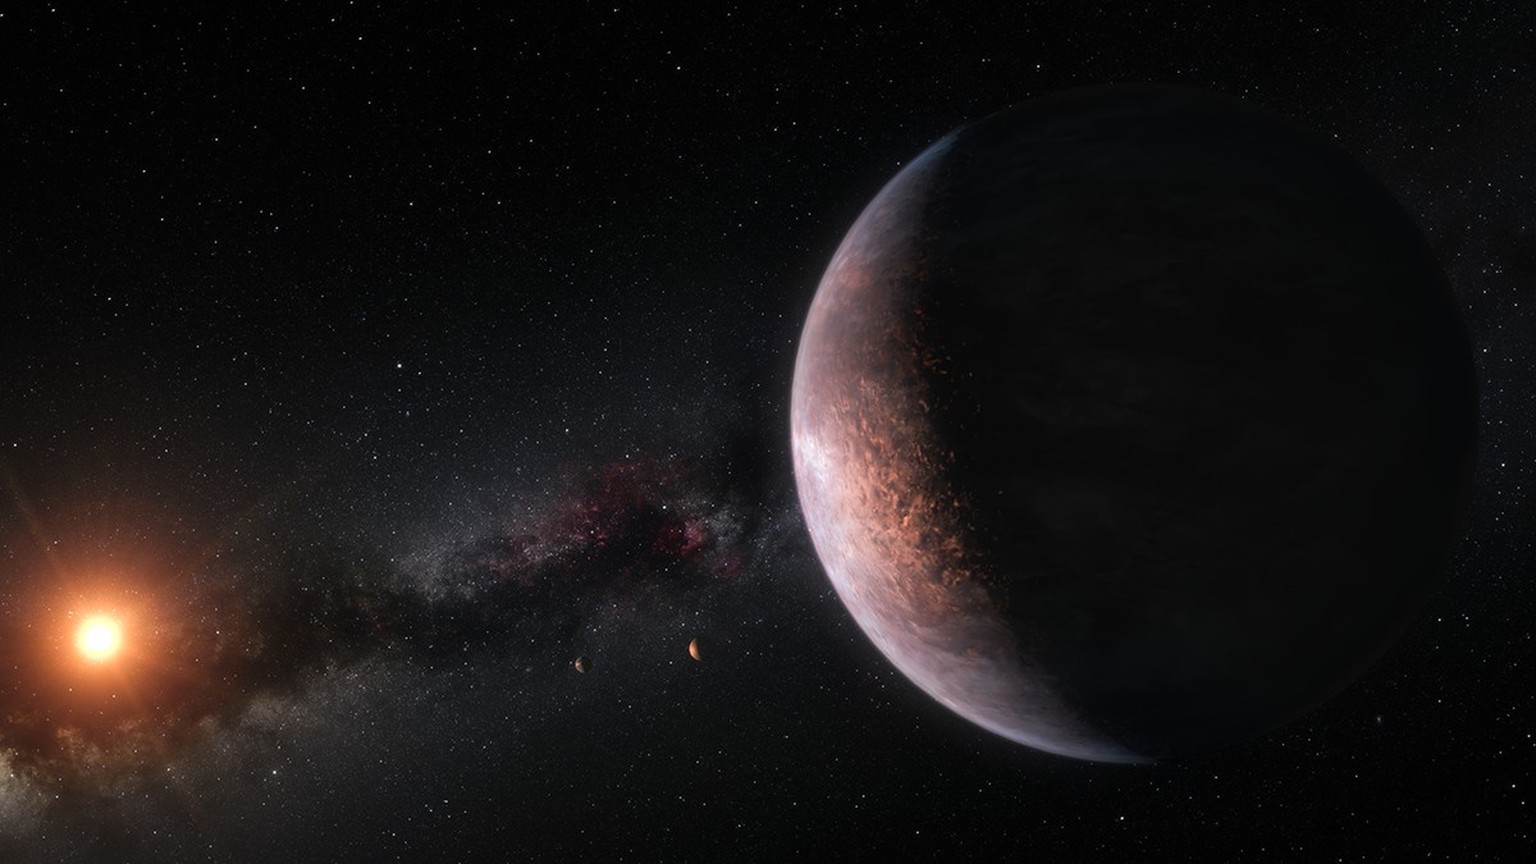 Die Planeten im Trappist-1-System, die einen Roten Zwerg umkreisen, sind vermutlich rotationsgebunden. 
https://www.eso.org/public/images/eso1805a/